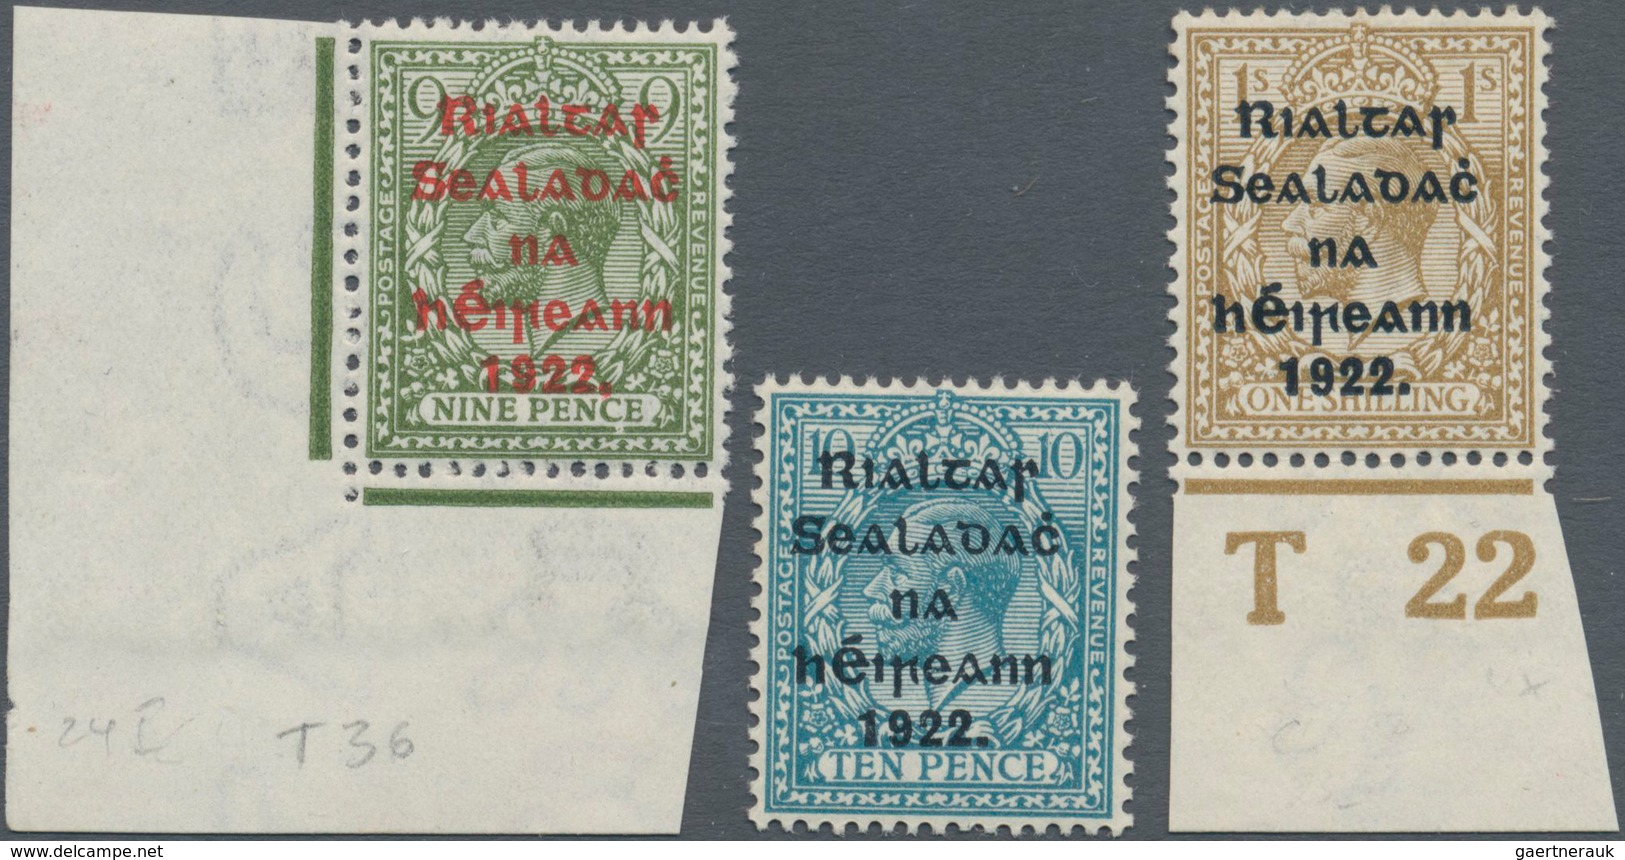 Irland: 1922, Rialtas Overprints, Thom Printing, ½d. To 1s., Set Of 14 Values Mint Original Gum, Mai - Briefe U. Dokumente